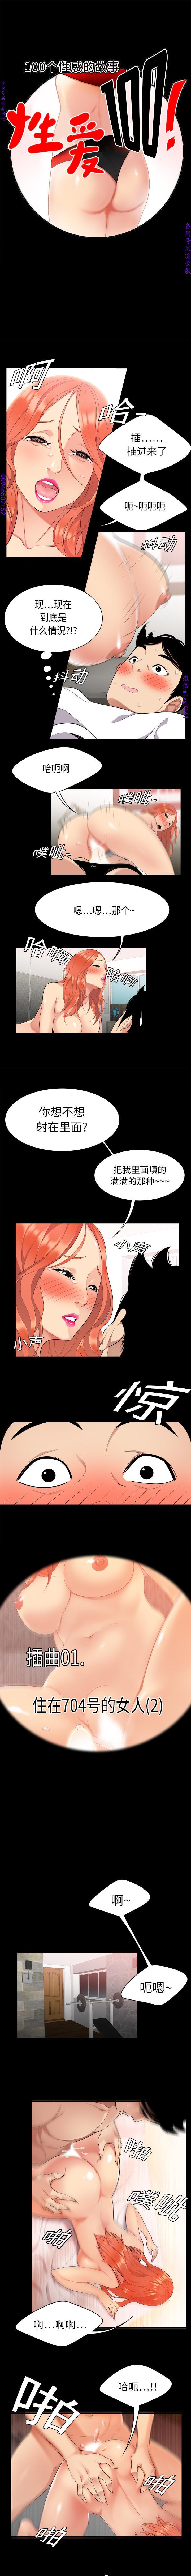 Chacal 性爱百分百  完结 【中文】 Cutie - Page 8